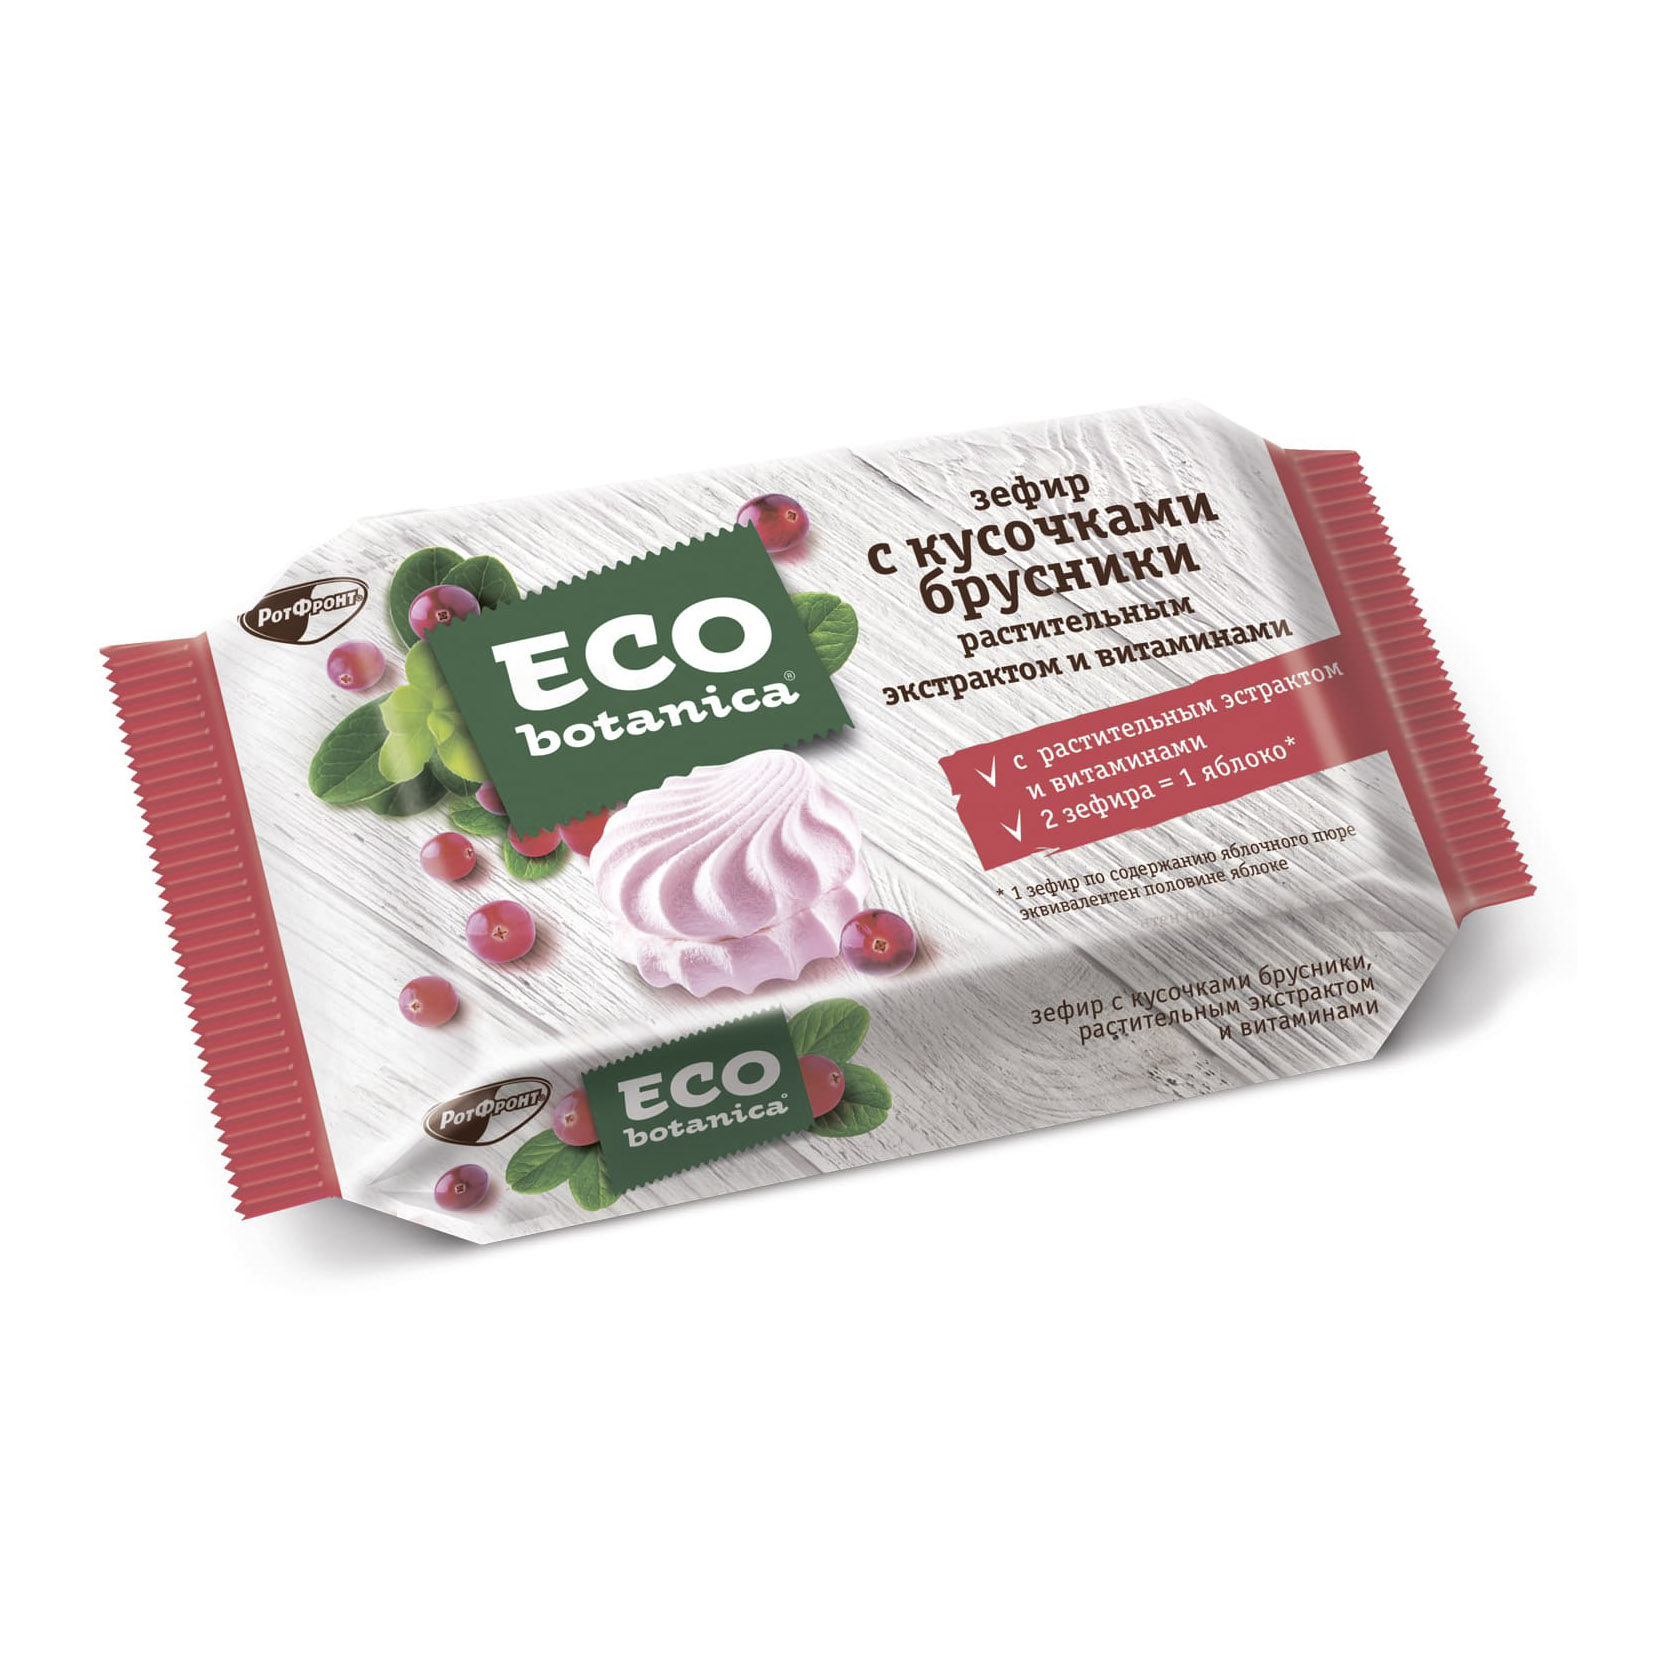 зефир eco botanica 250г с ванильным вкусом и витаминами Зефир Eco Botanica с кусочками брусники, растительным экстрактом и витаминами 250 г